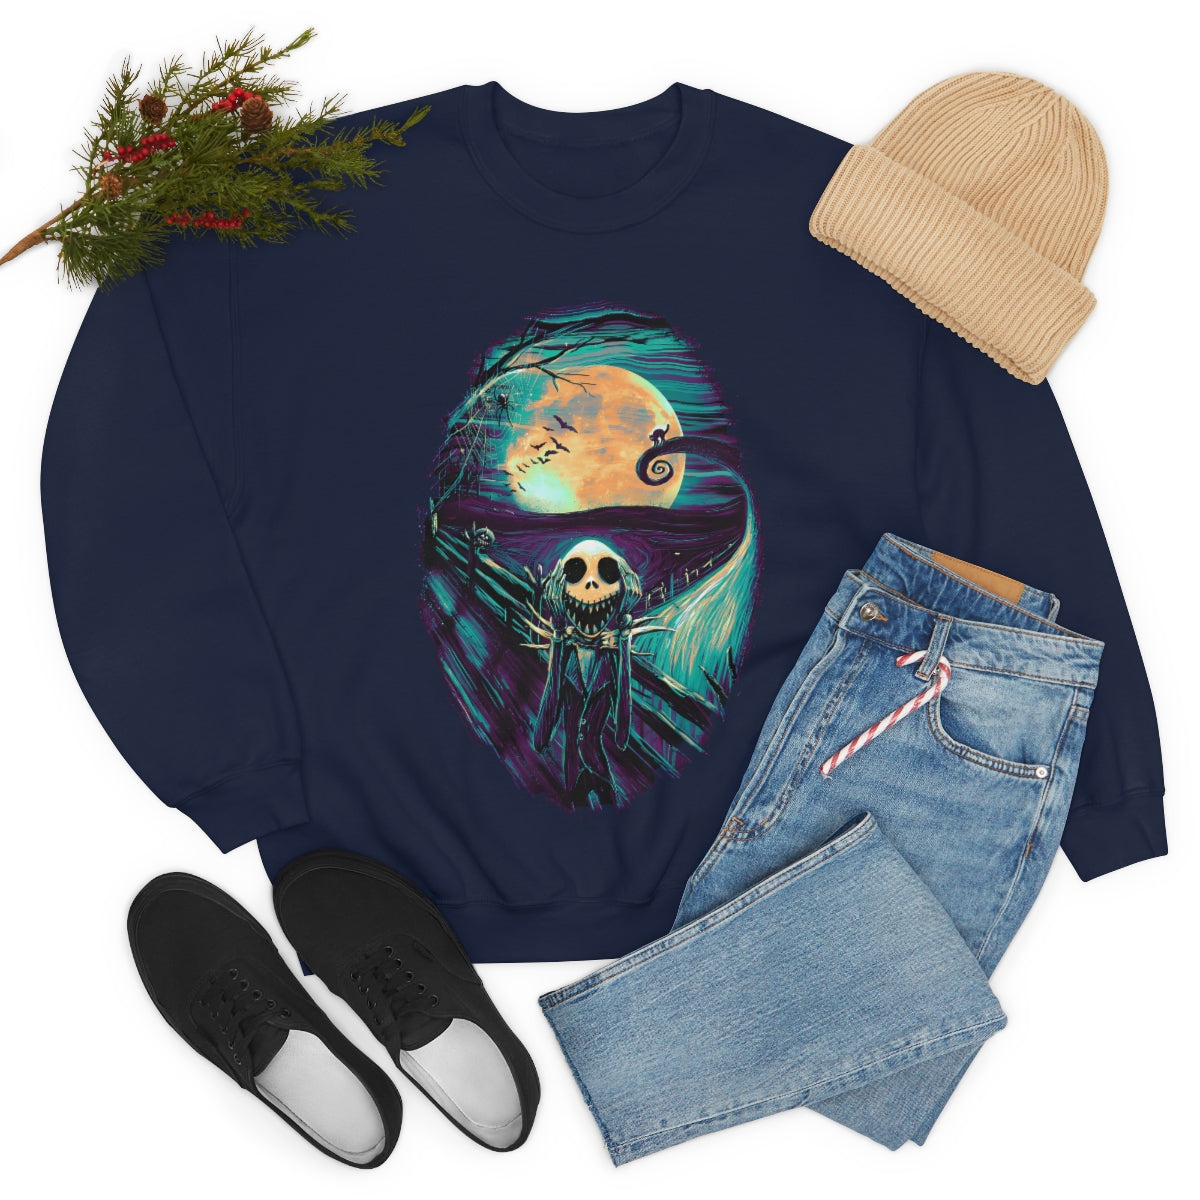 Nightmare before Christmas - The Scream Sweatshirt